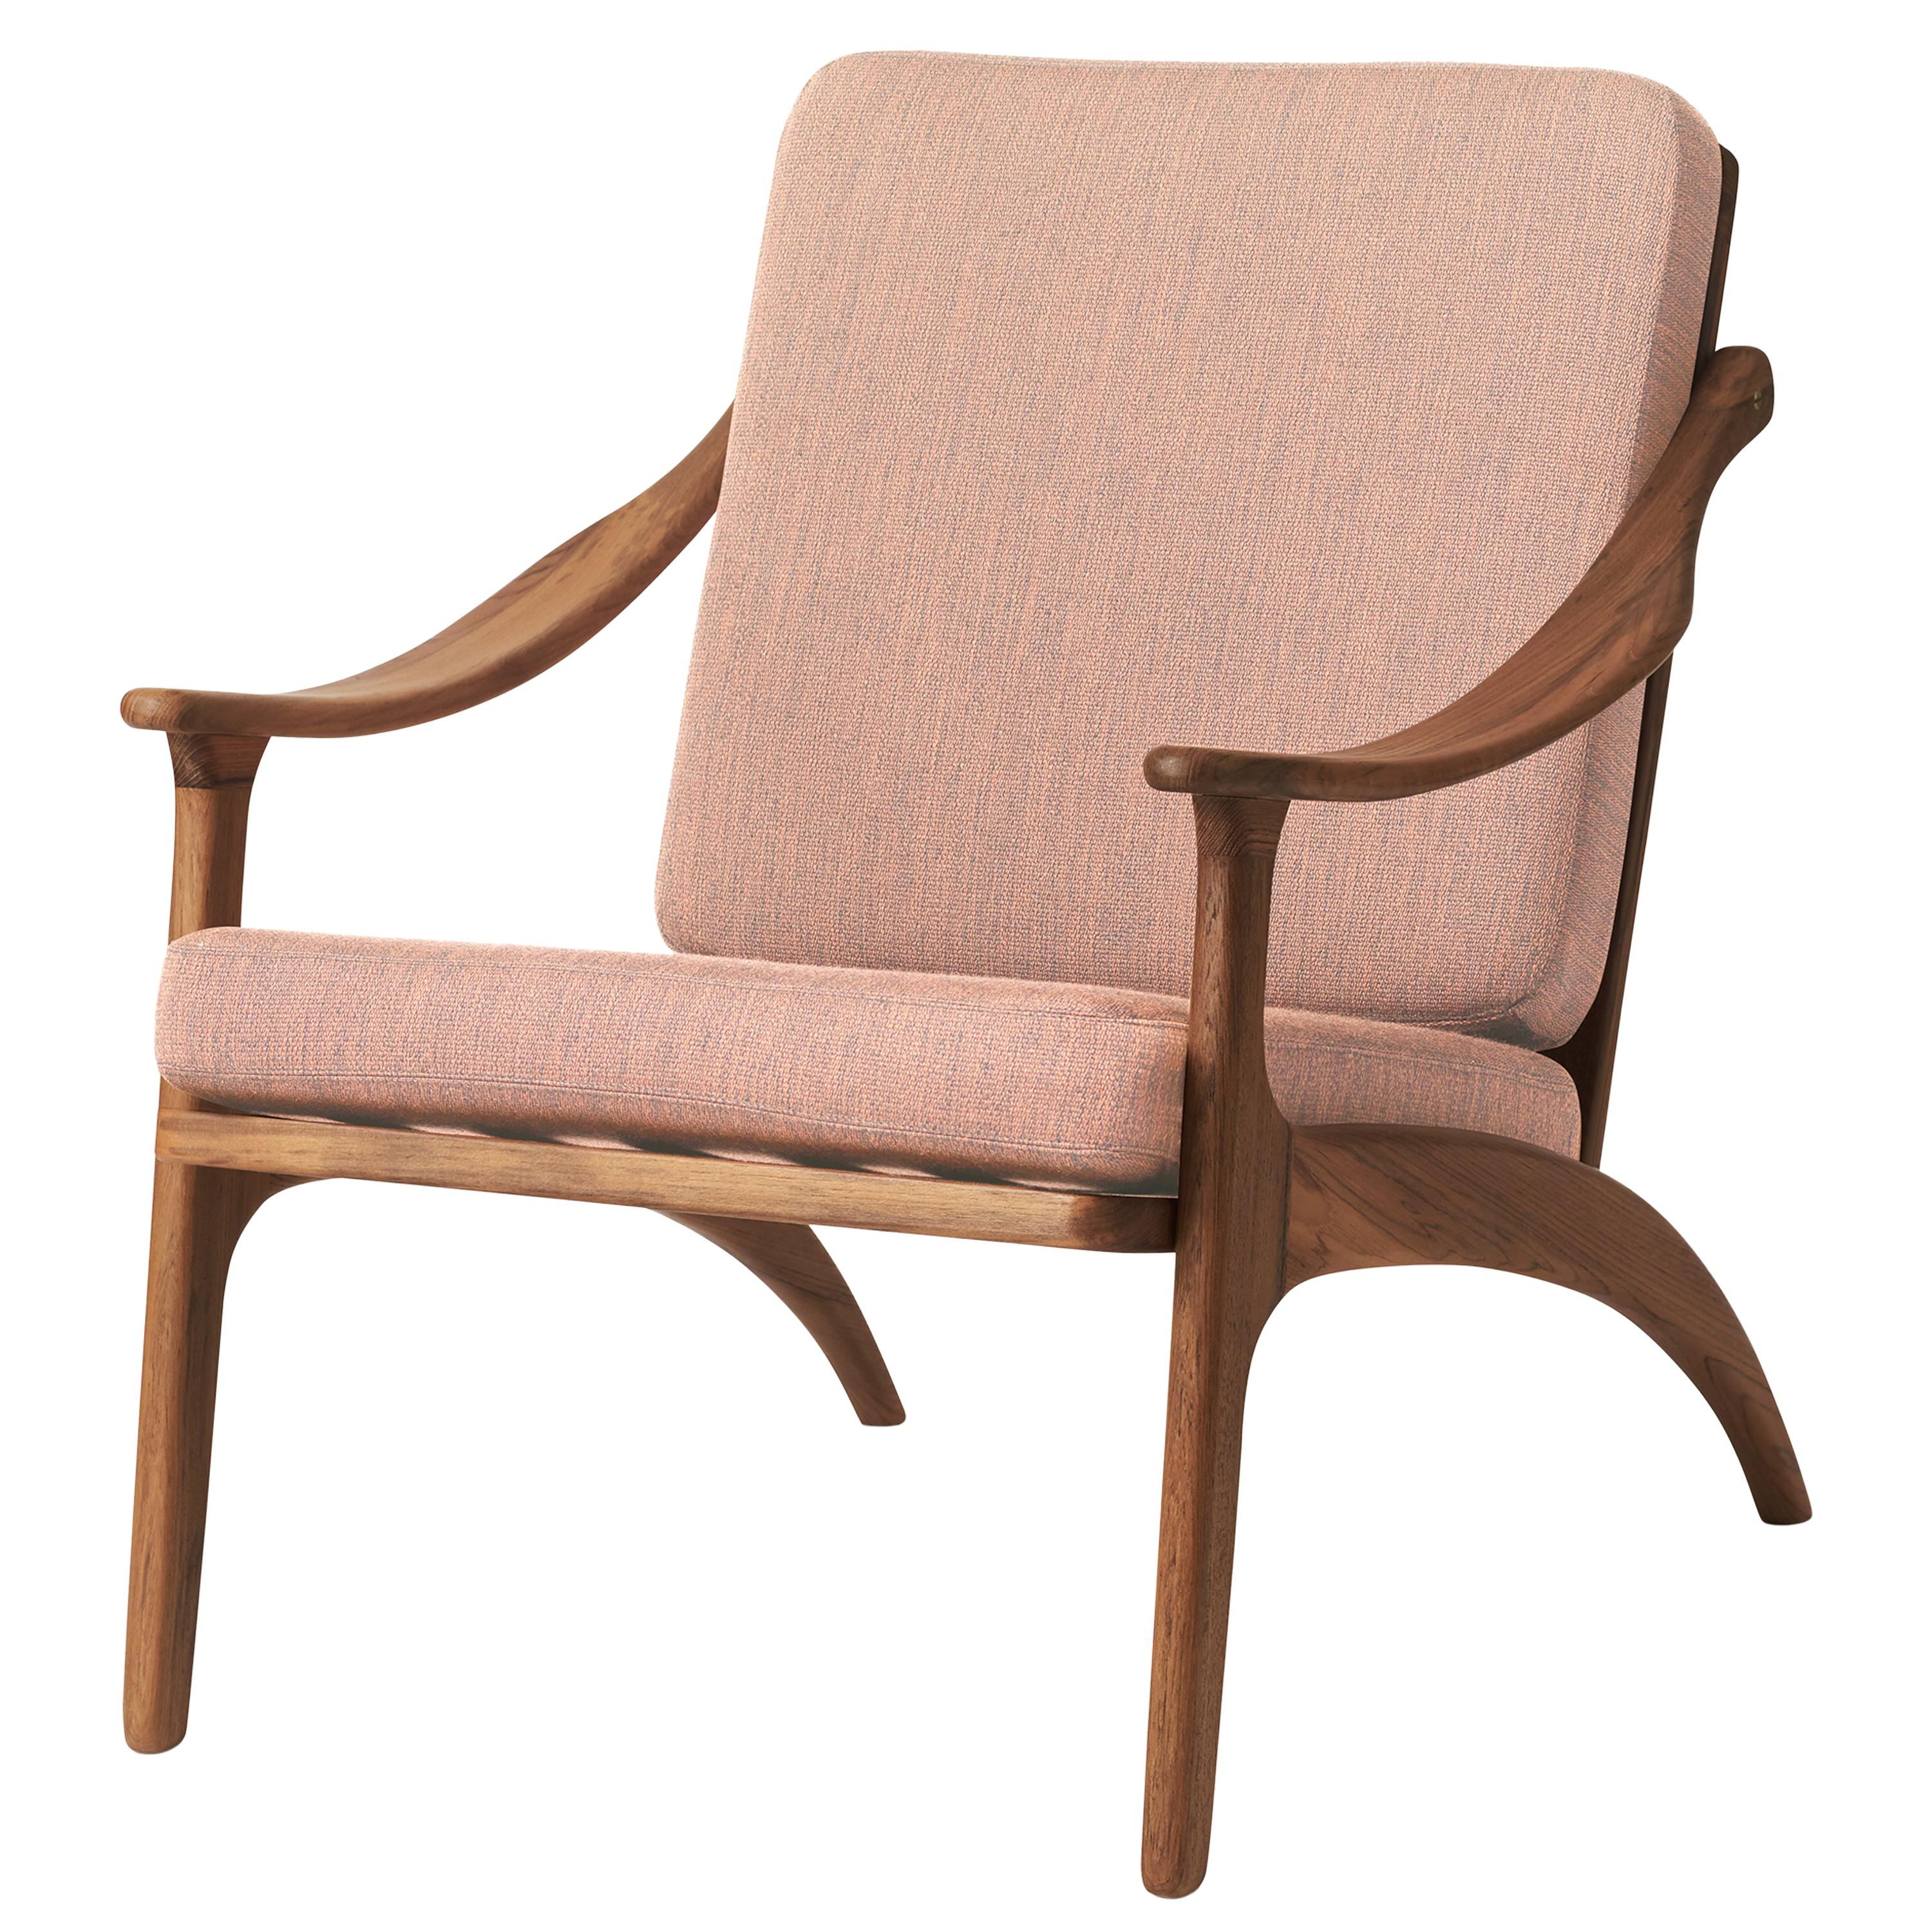 Lean Back Monochrome Lounge Chair in Teak, by Arne Hovmand-Olsen from Warm 